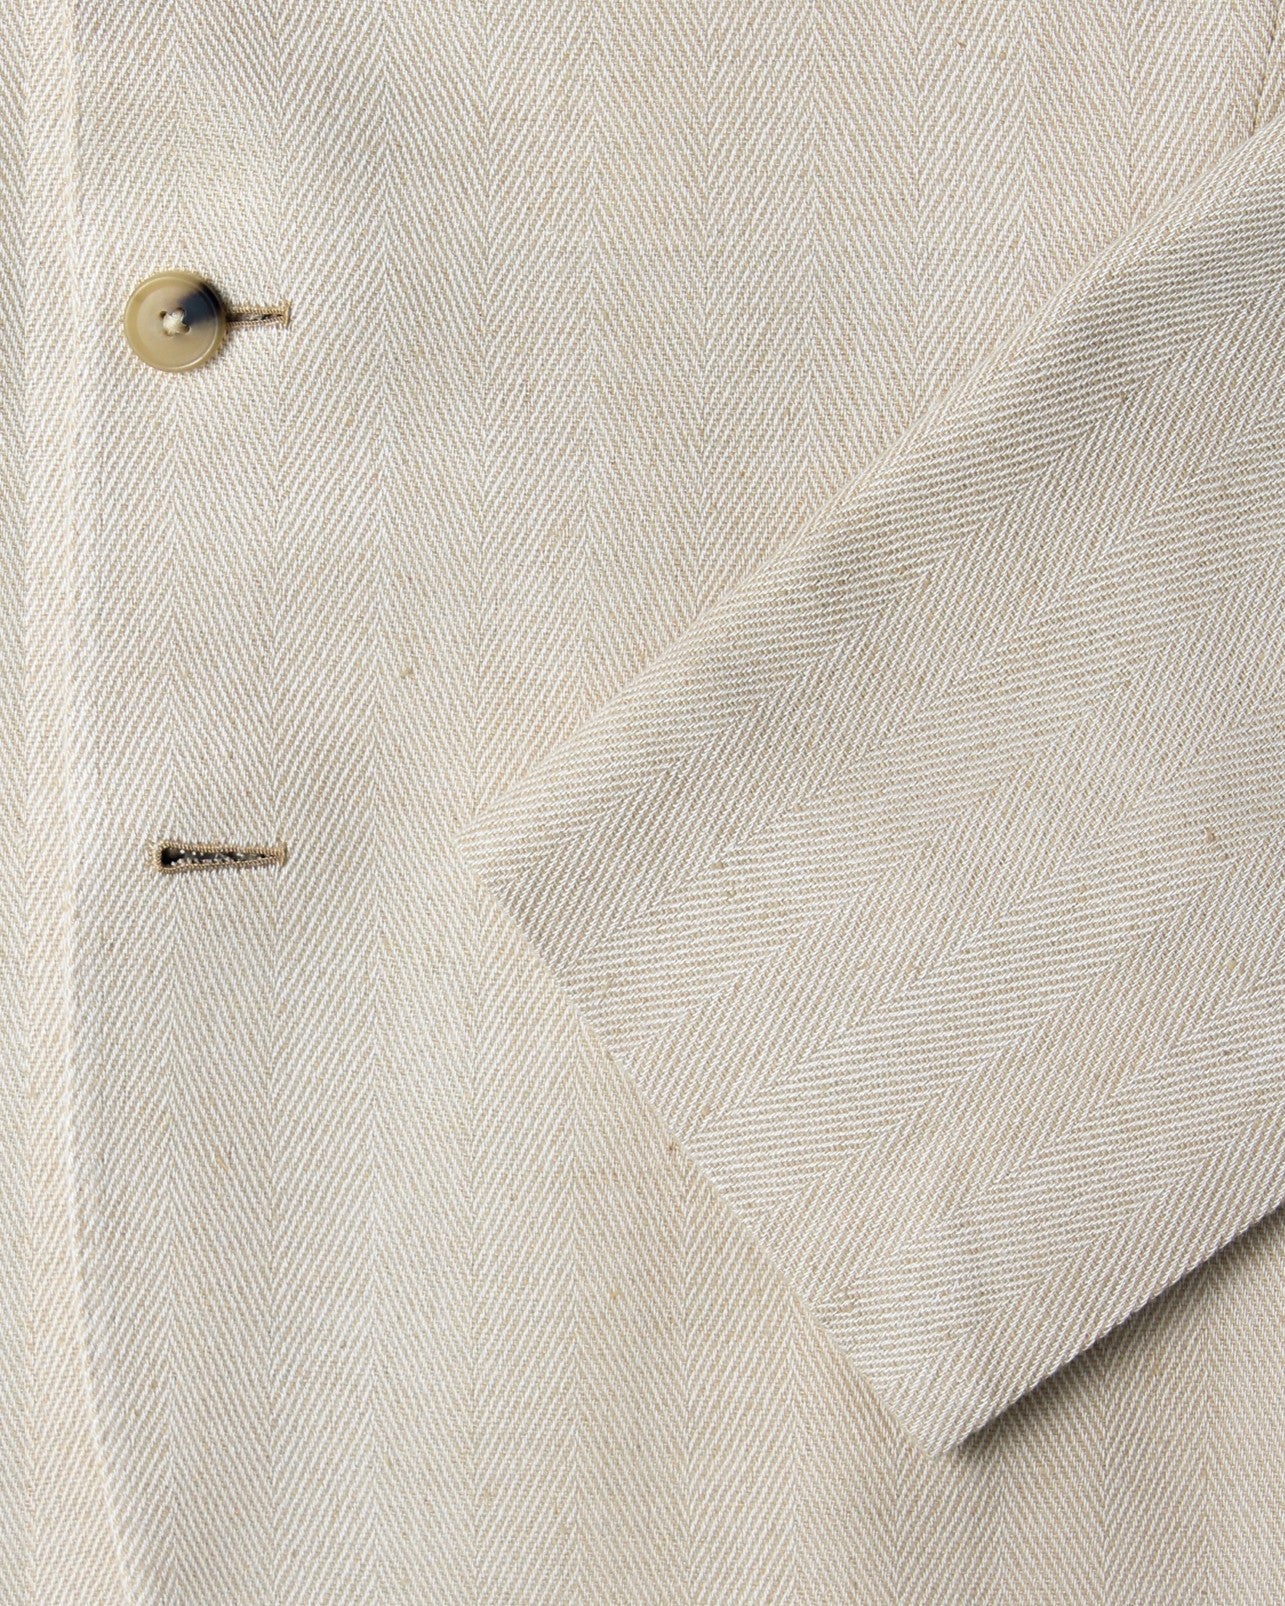 Made-To-Order Sport Coat Beige Herringbone Silk